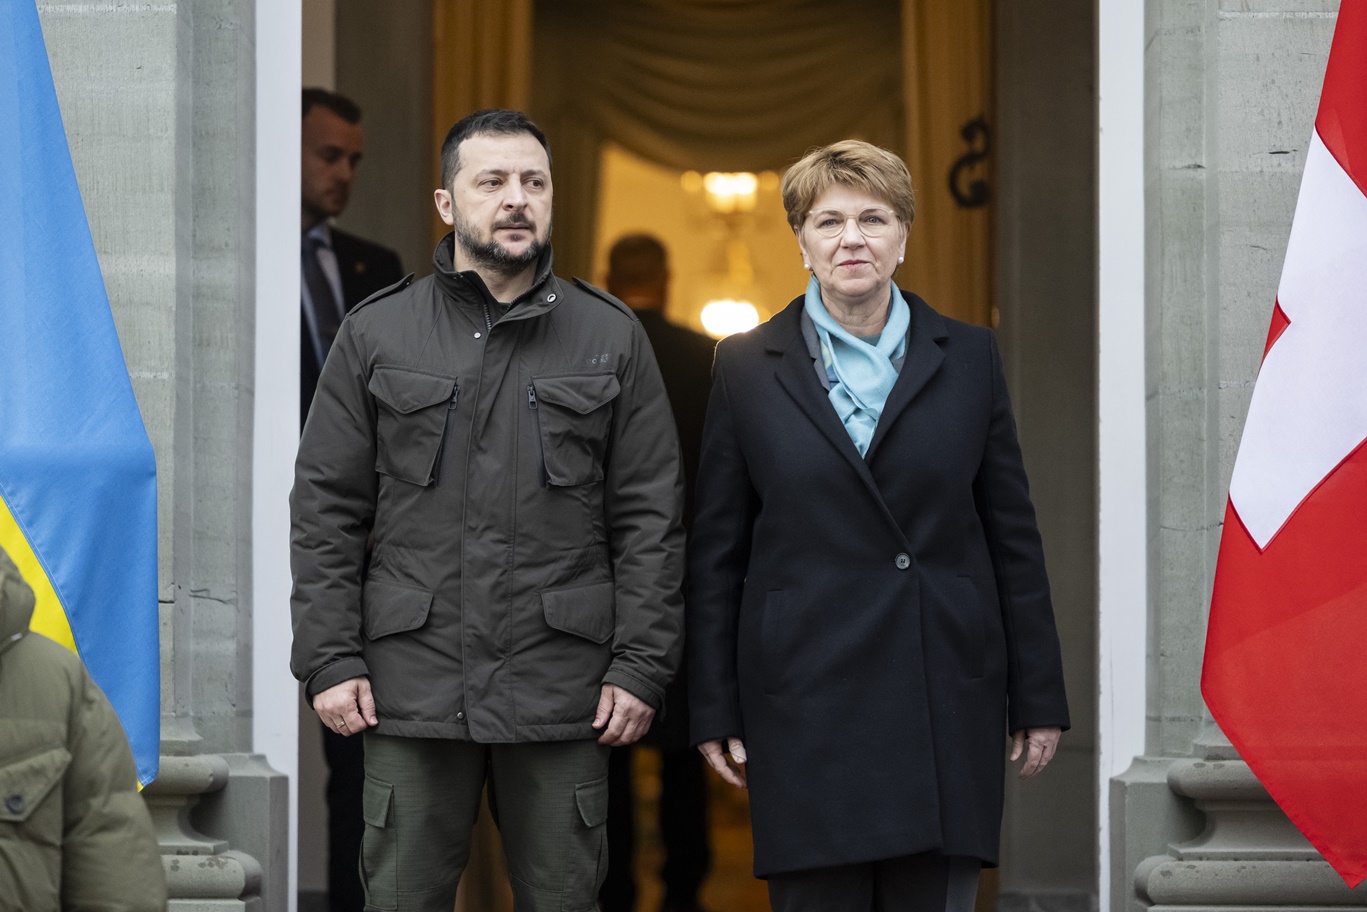 Ο πρόεδρος της Ουκρανίας, Βολοντίμιρ Ζελένσκι και η πρόεδρος της Ελβετίας, Βιόλα Άμχερτ © EPA/ALESSANDRO DELLA VALLE / POOL